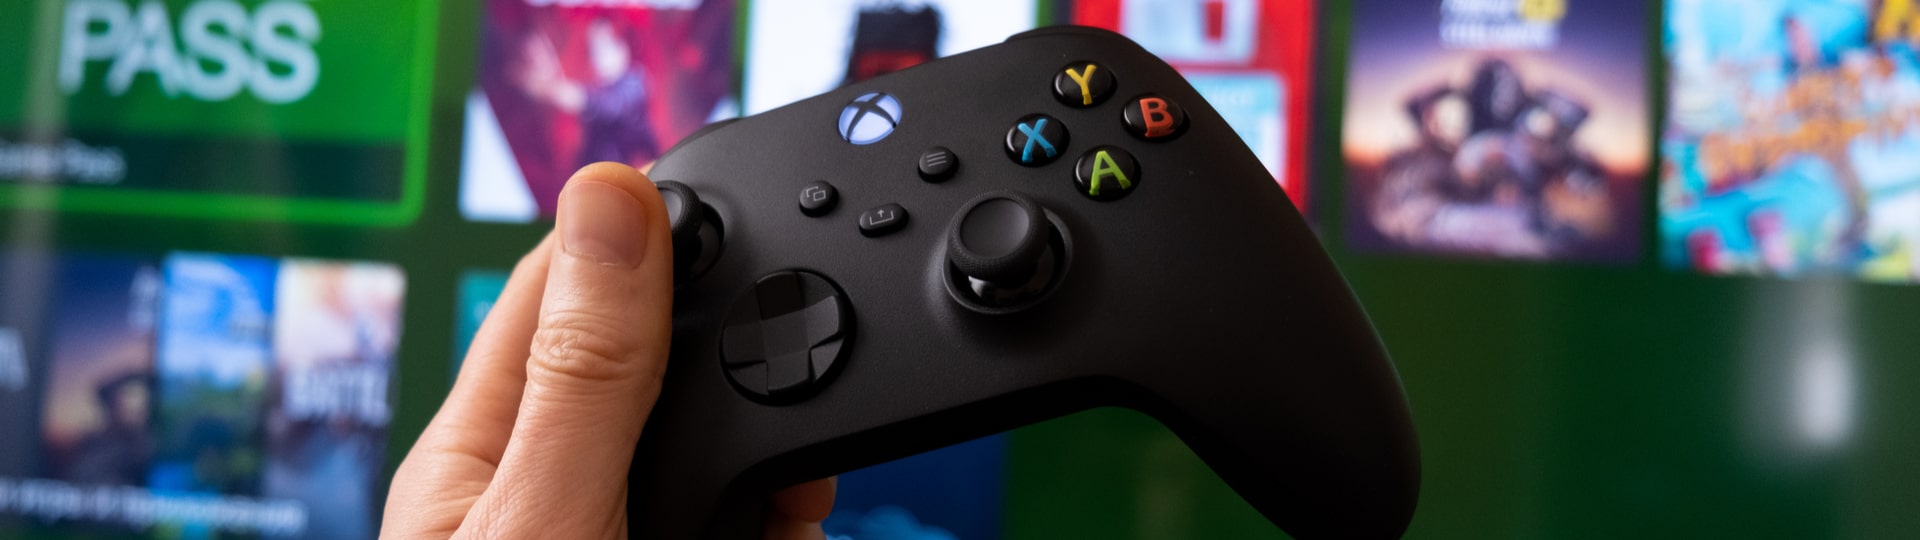 Microsoft zastavil výrobu všech herních konzolí řady Xbox One